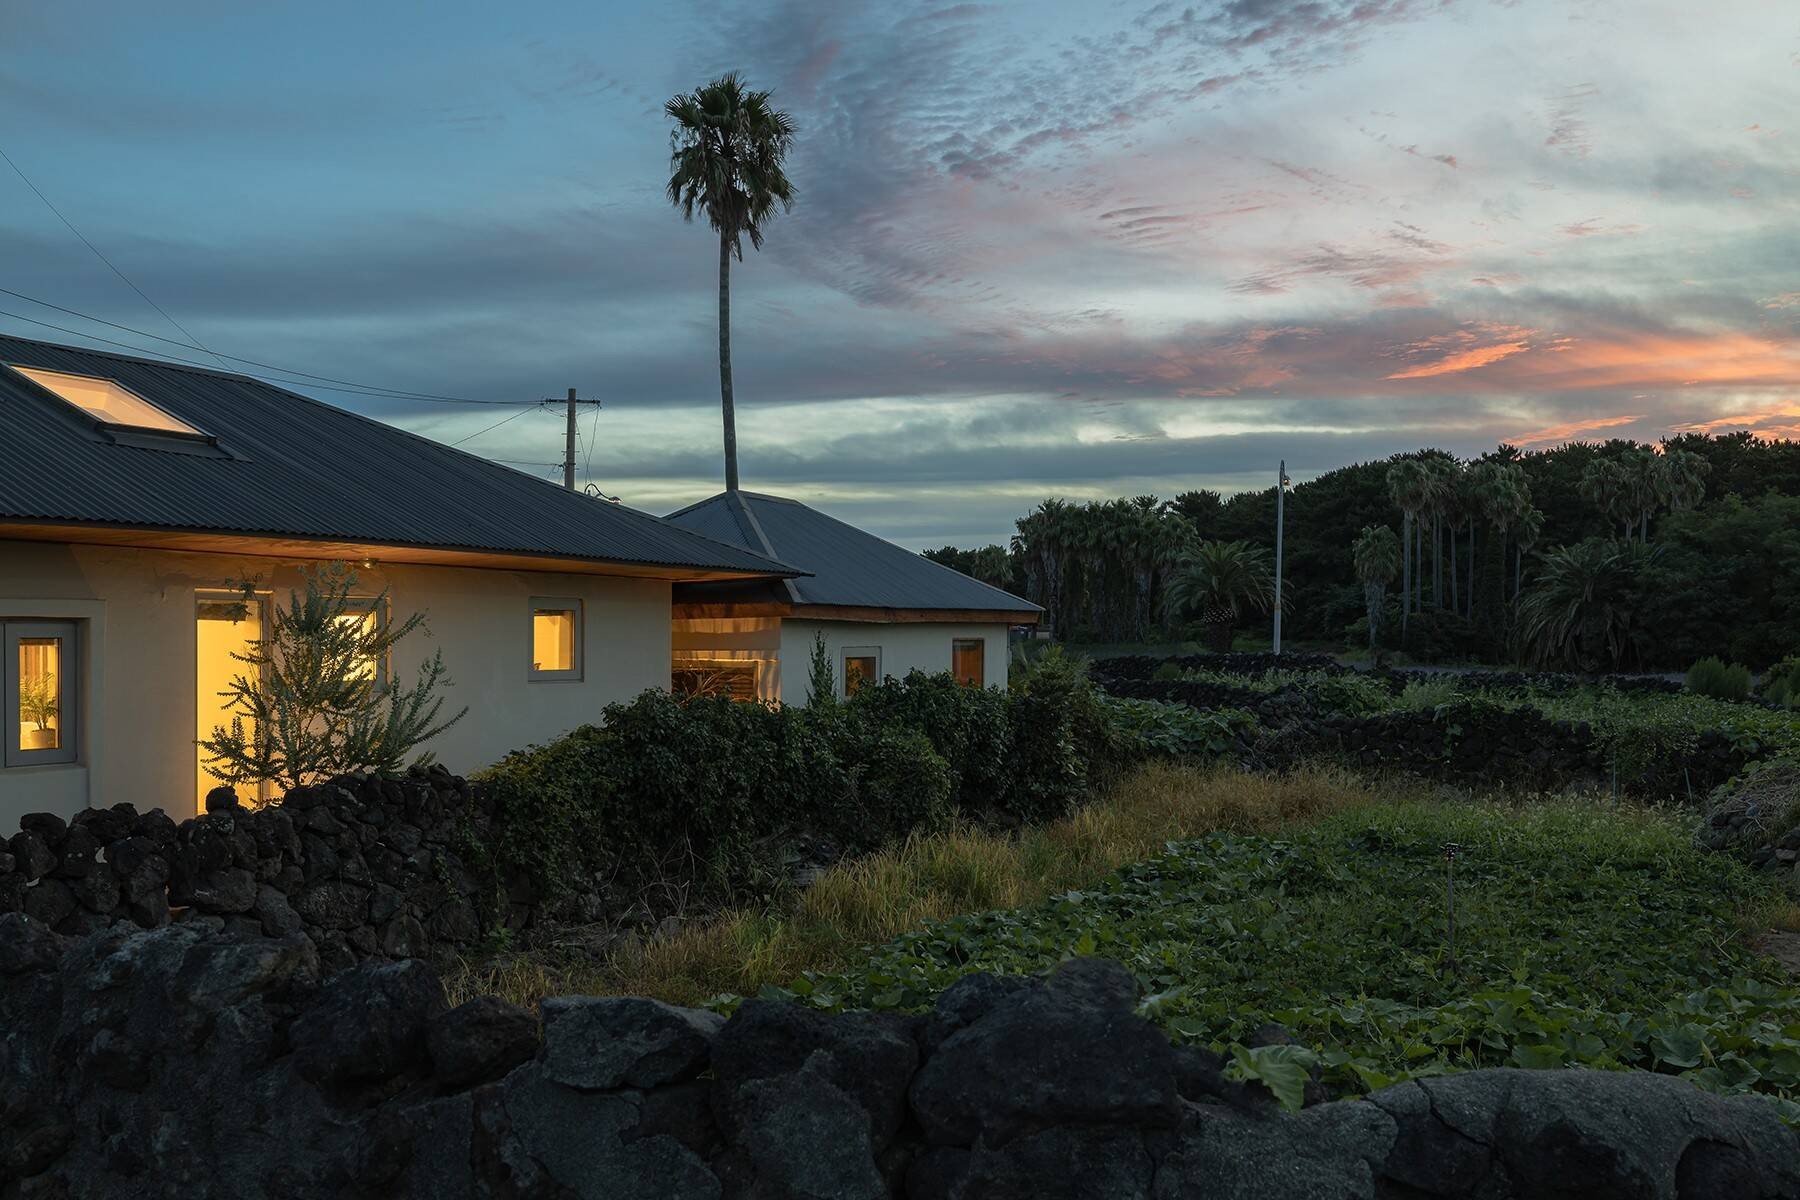 
Căn nhà nằm giữa thiên nhiên trong xanh của hòn đảo Jeju
